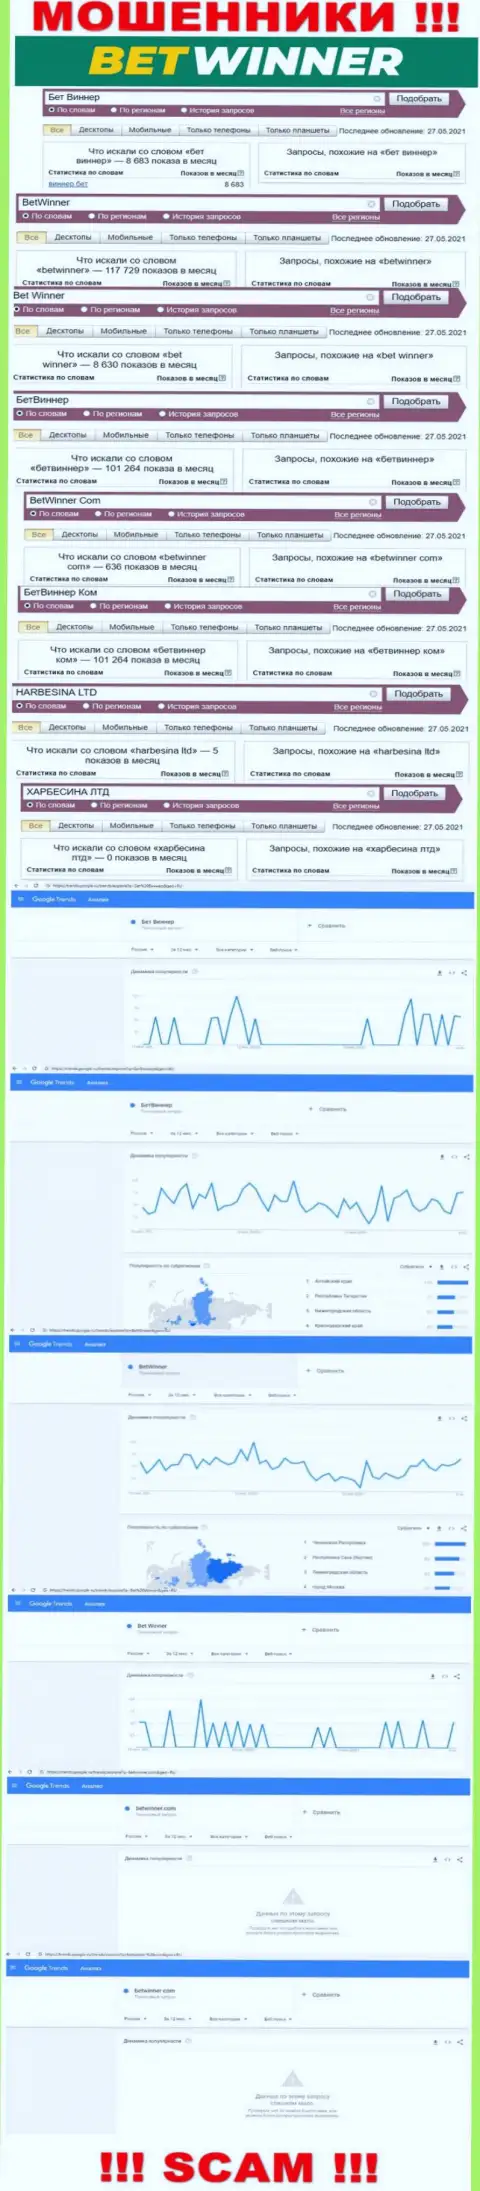 Статистические данные инет запросов в поисковиках глобальной сети относительно жуликов БетВиннер